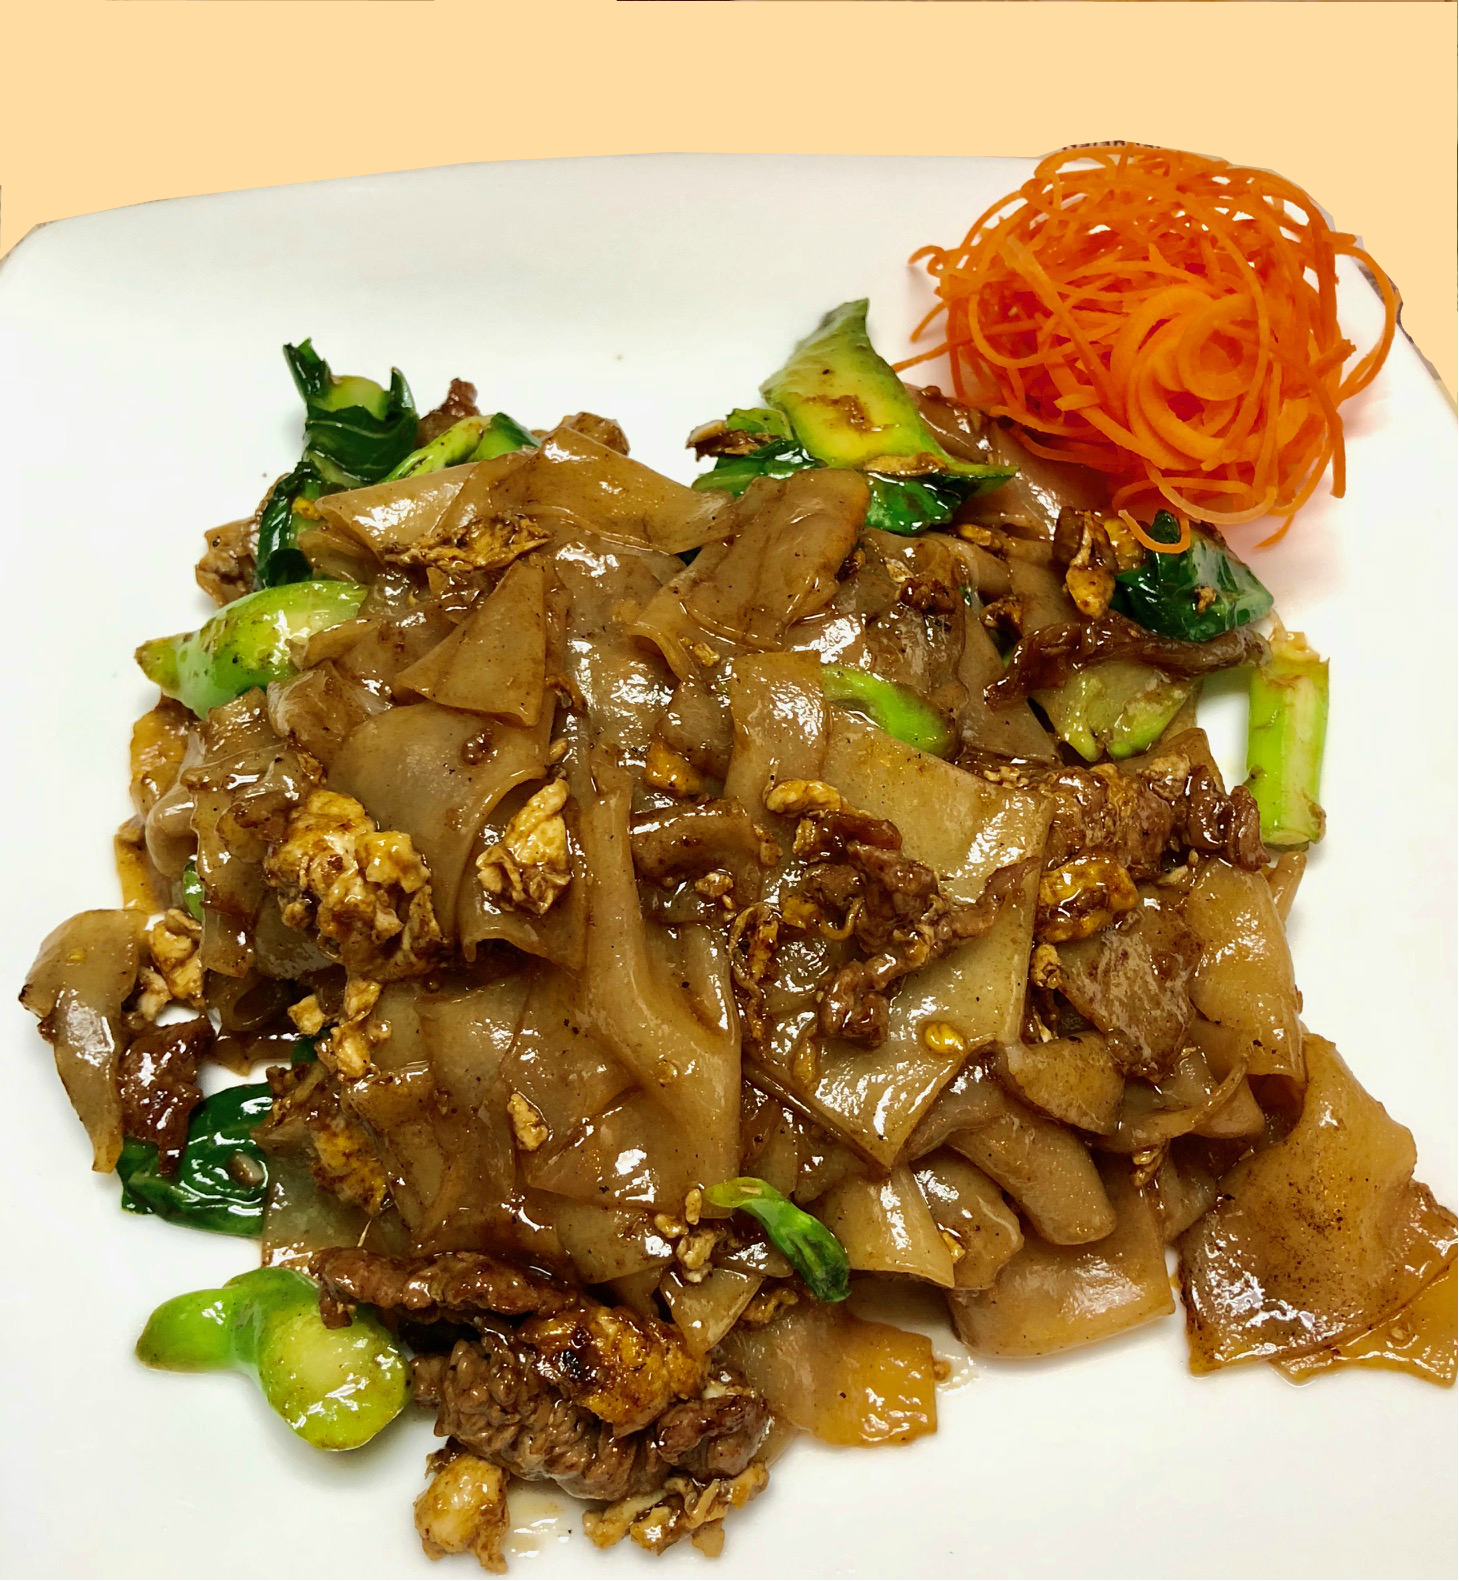 Order PAD SE EW ENTRÉE food online from Mee Thai Cuisine store, Brooklyn on bringmethat.com